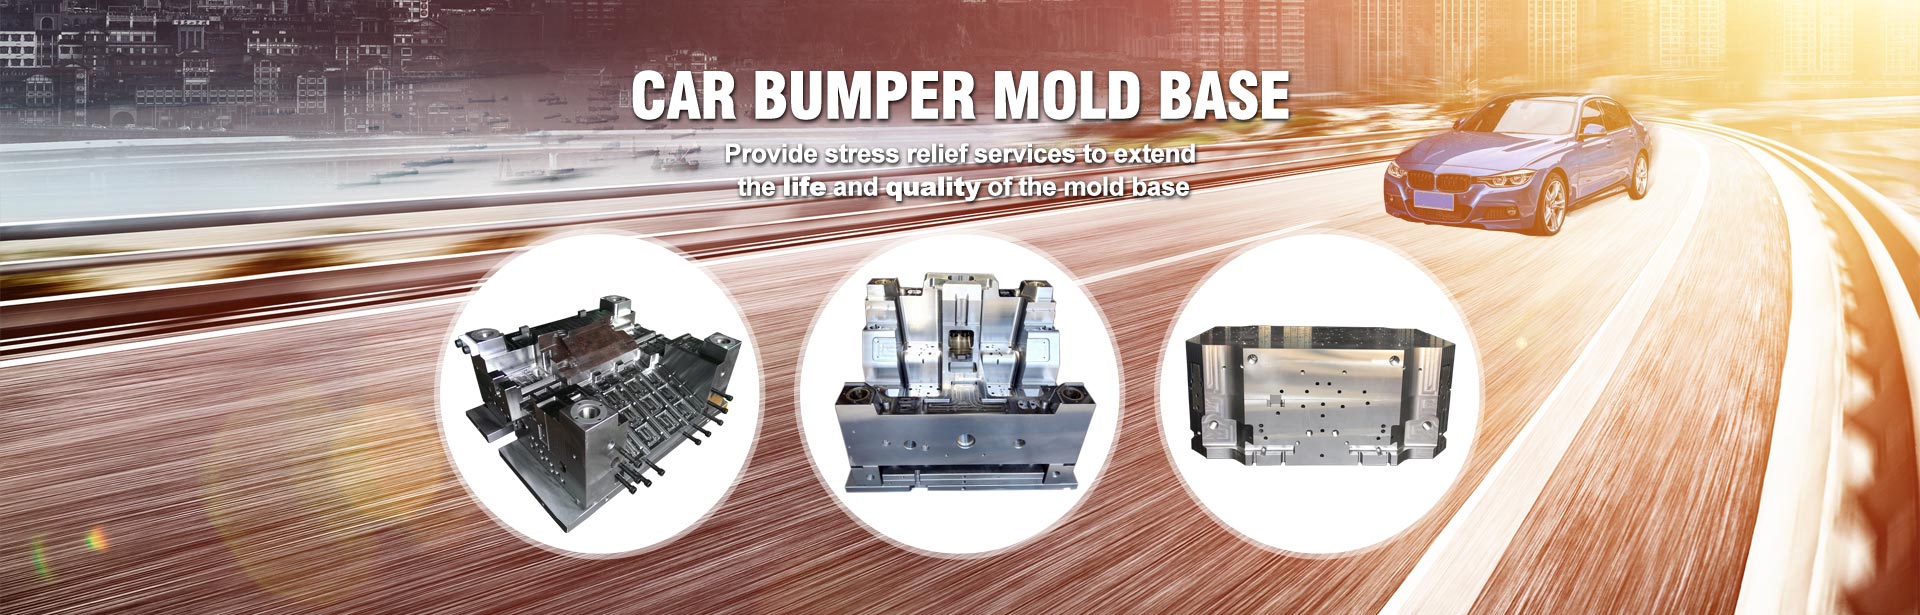 I-Car Bumper Mold Base